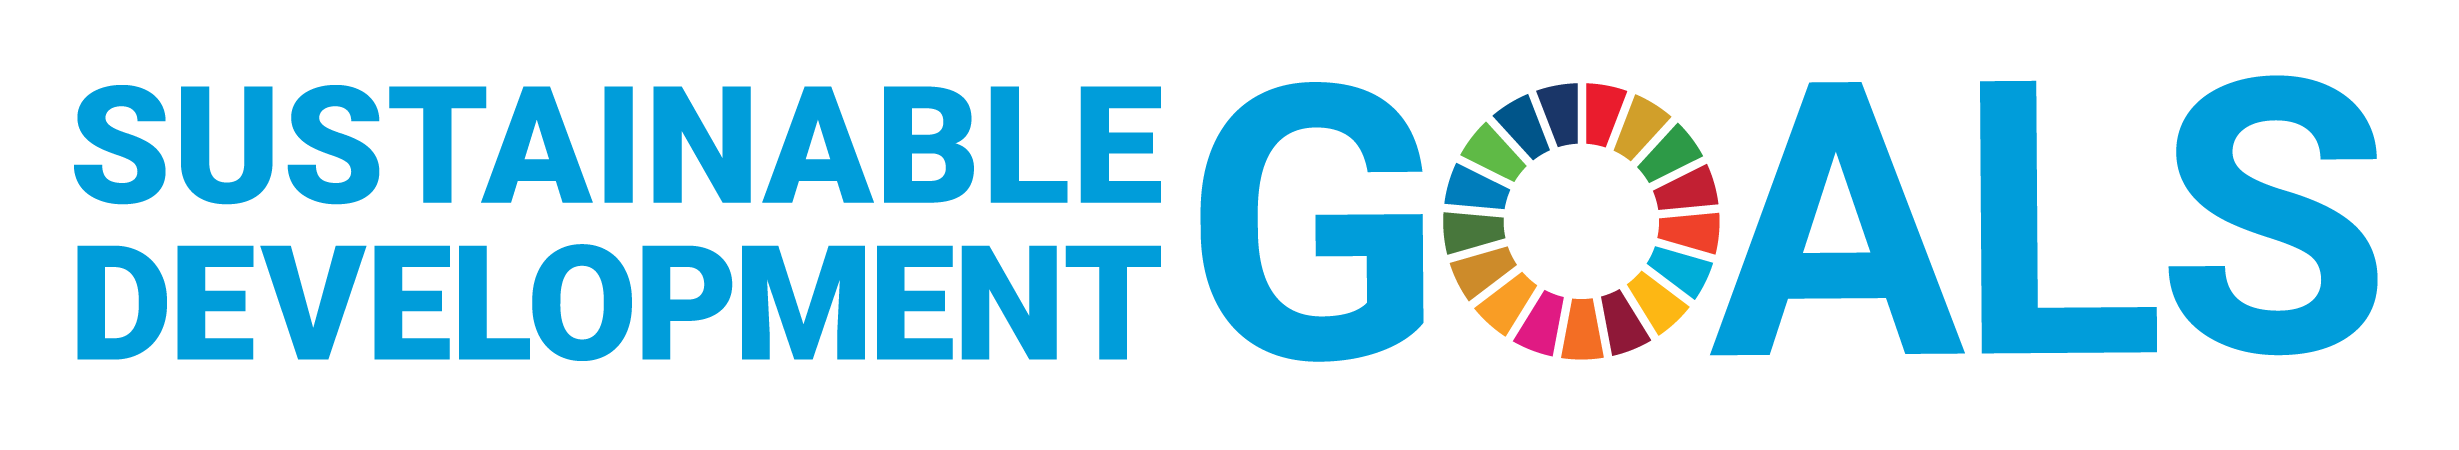 SDG logo without UN emblem